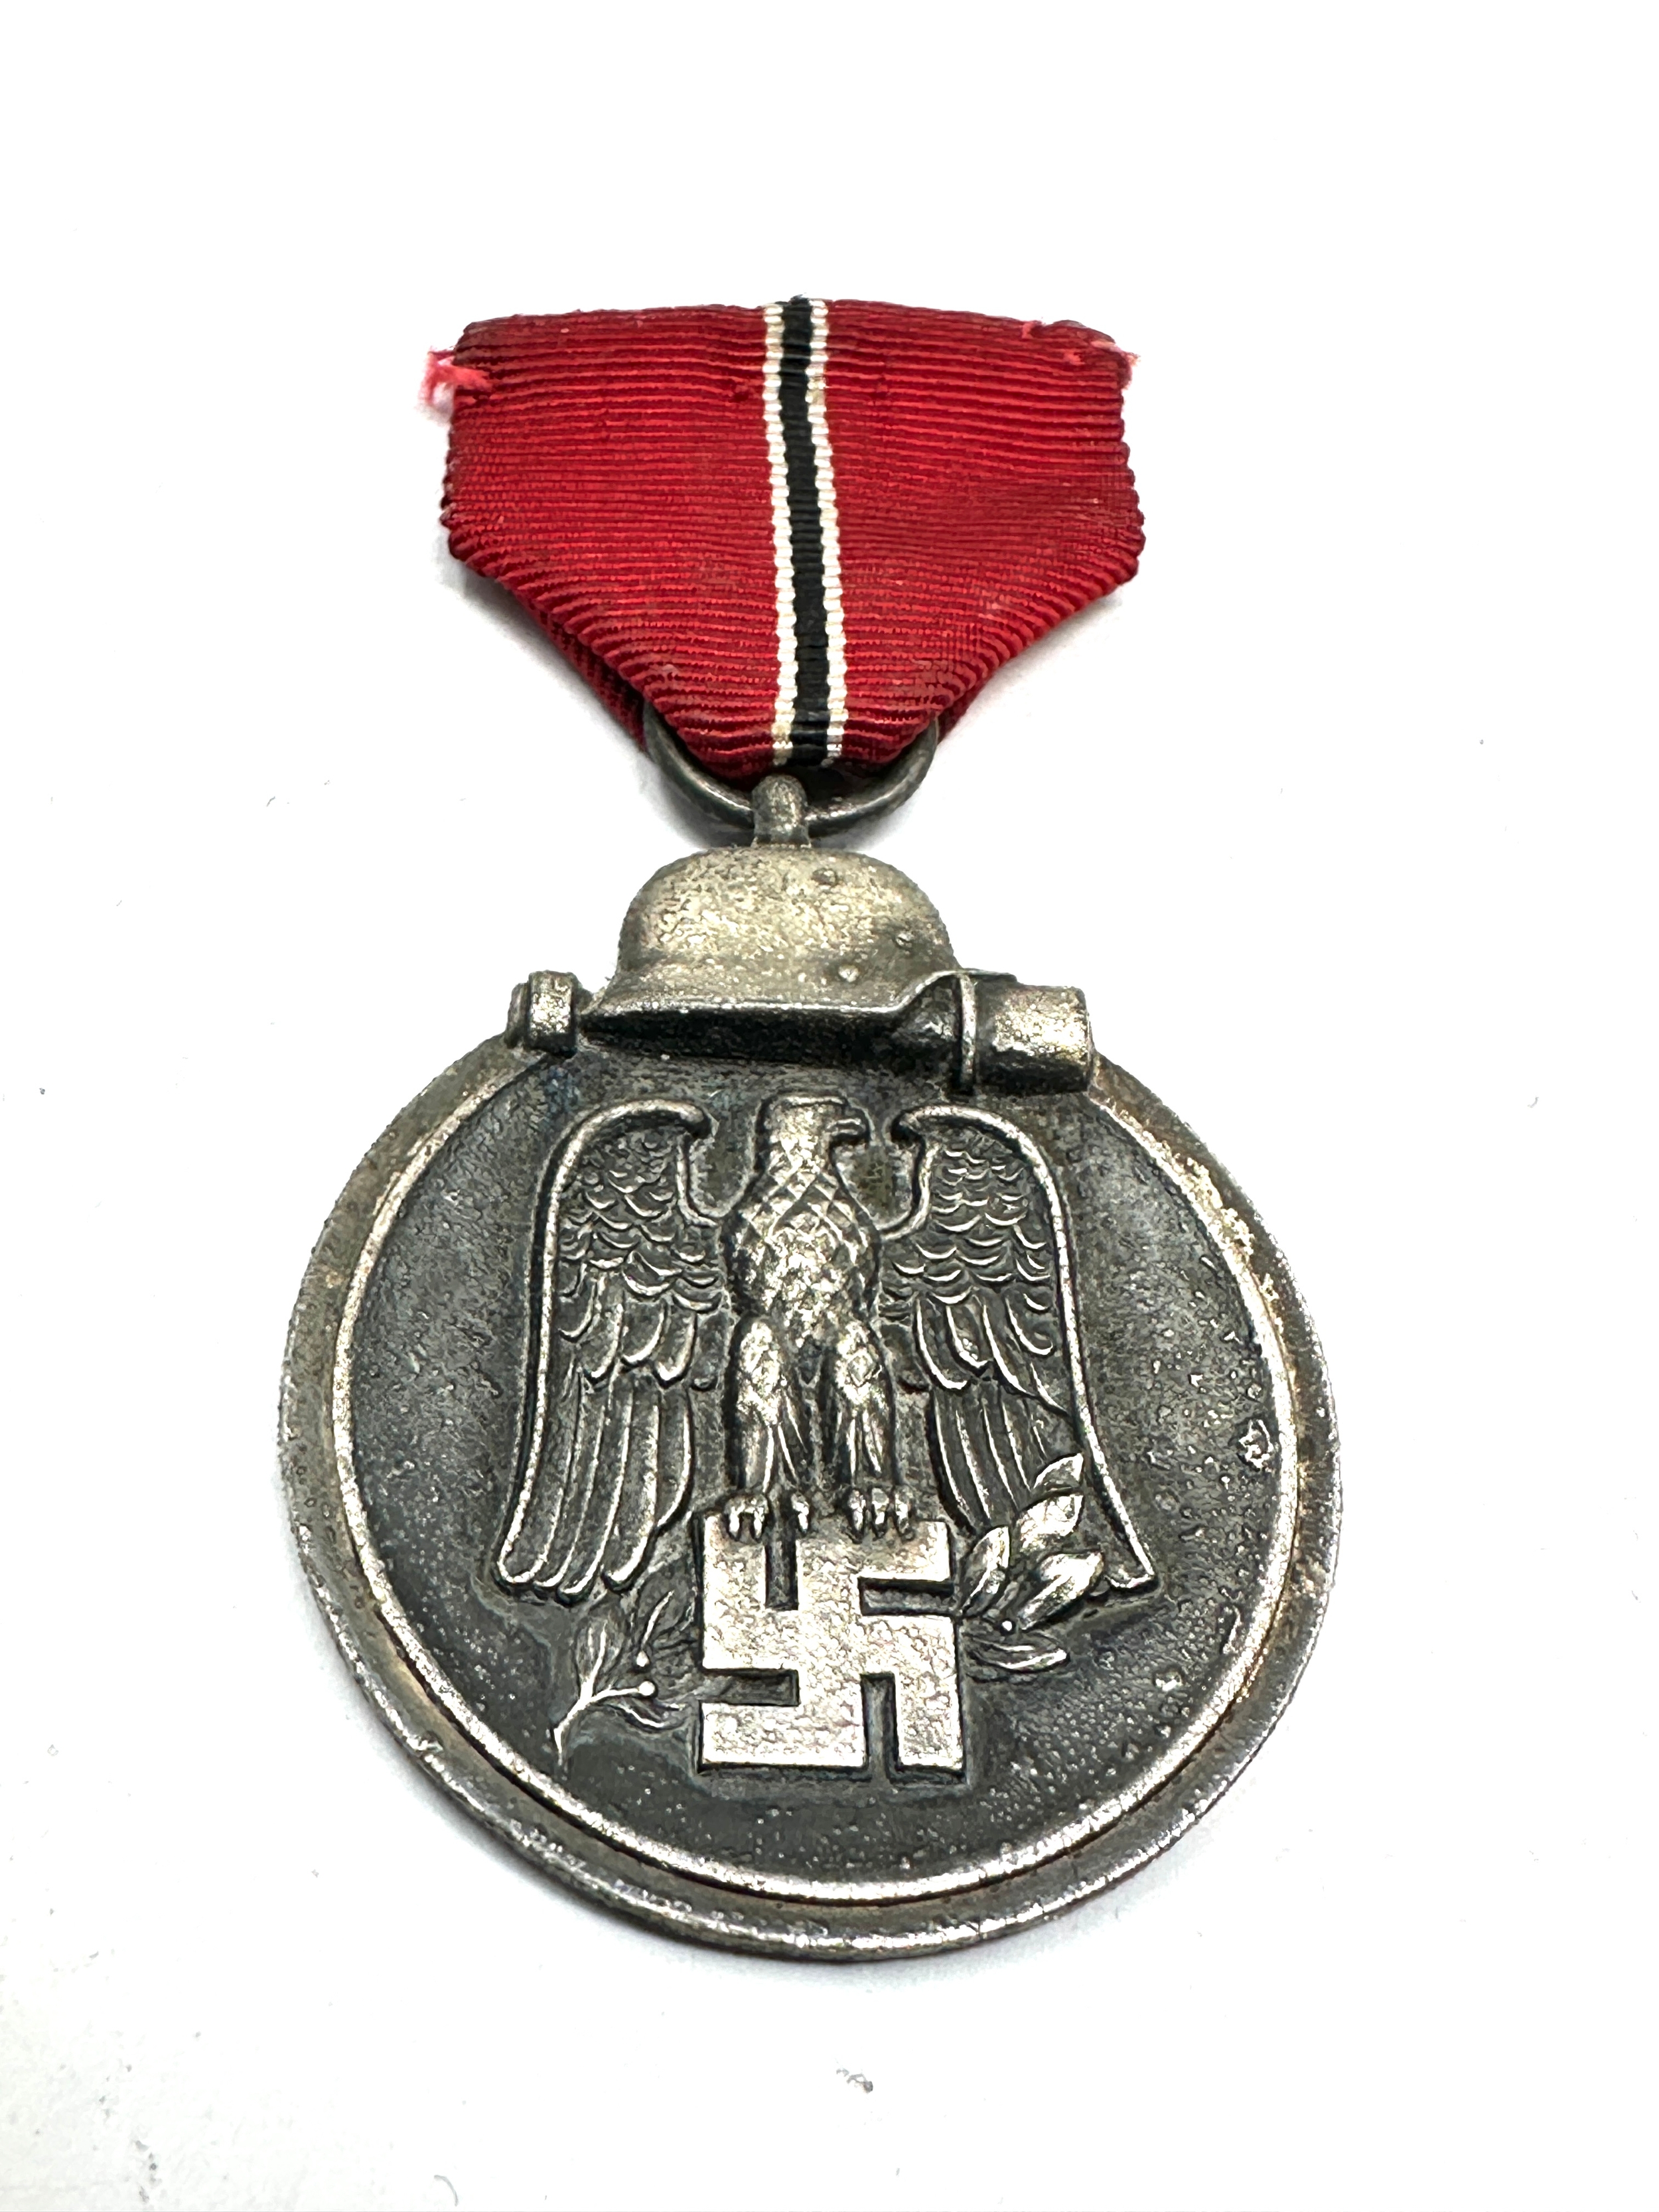 WW2 German Eastern front medal